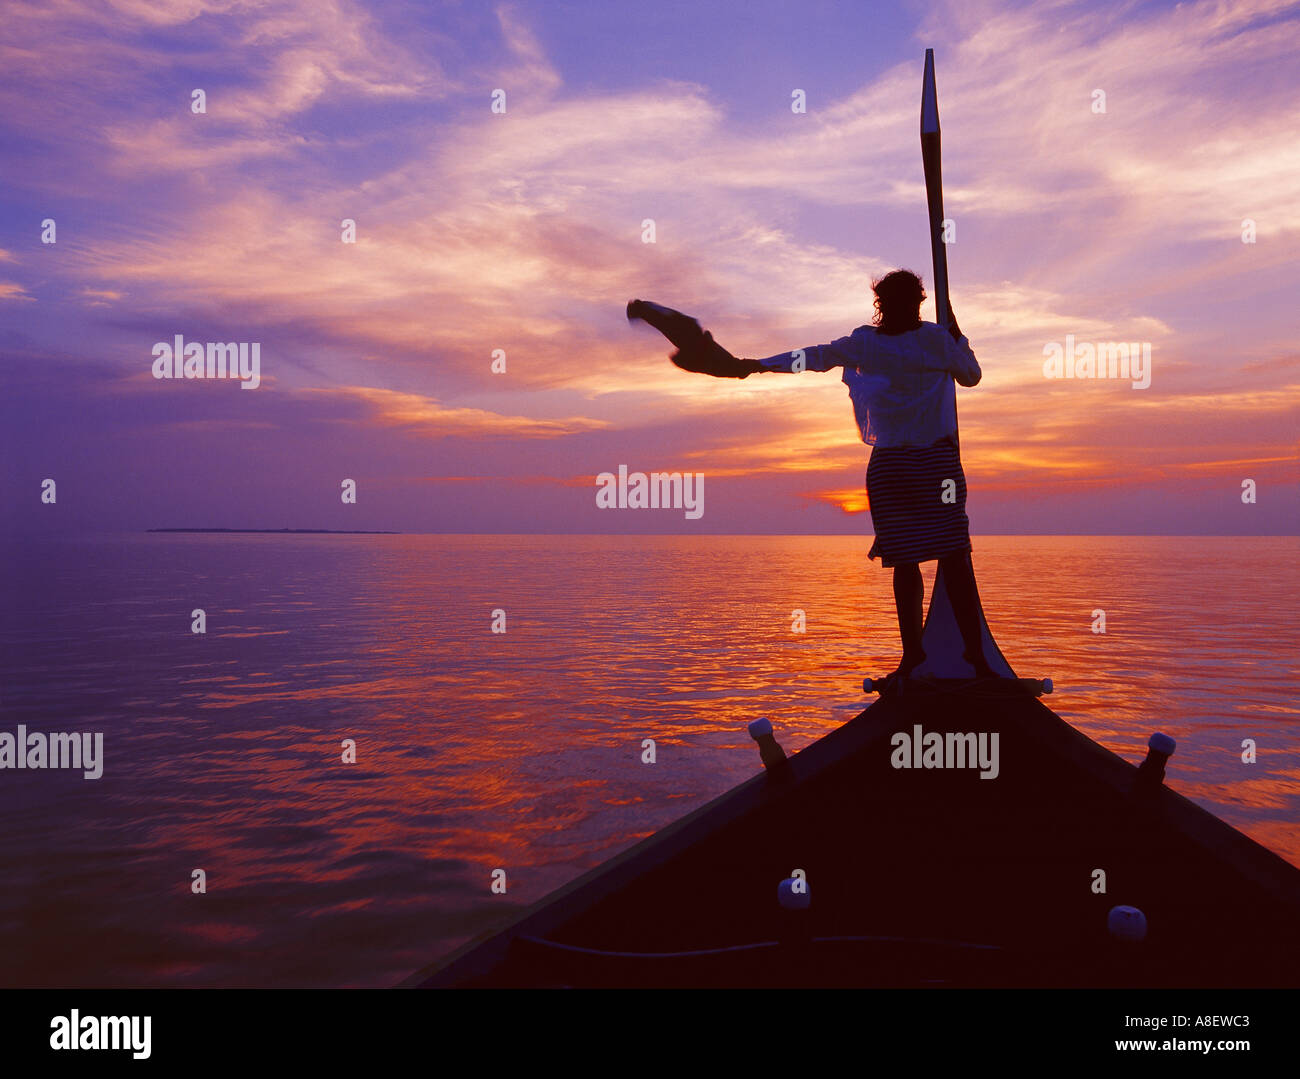 Îles Maldives océan Indien, l'atoll de Baa et bateau coucher de soleil, femme Banque D'Images